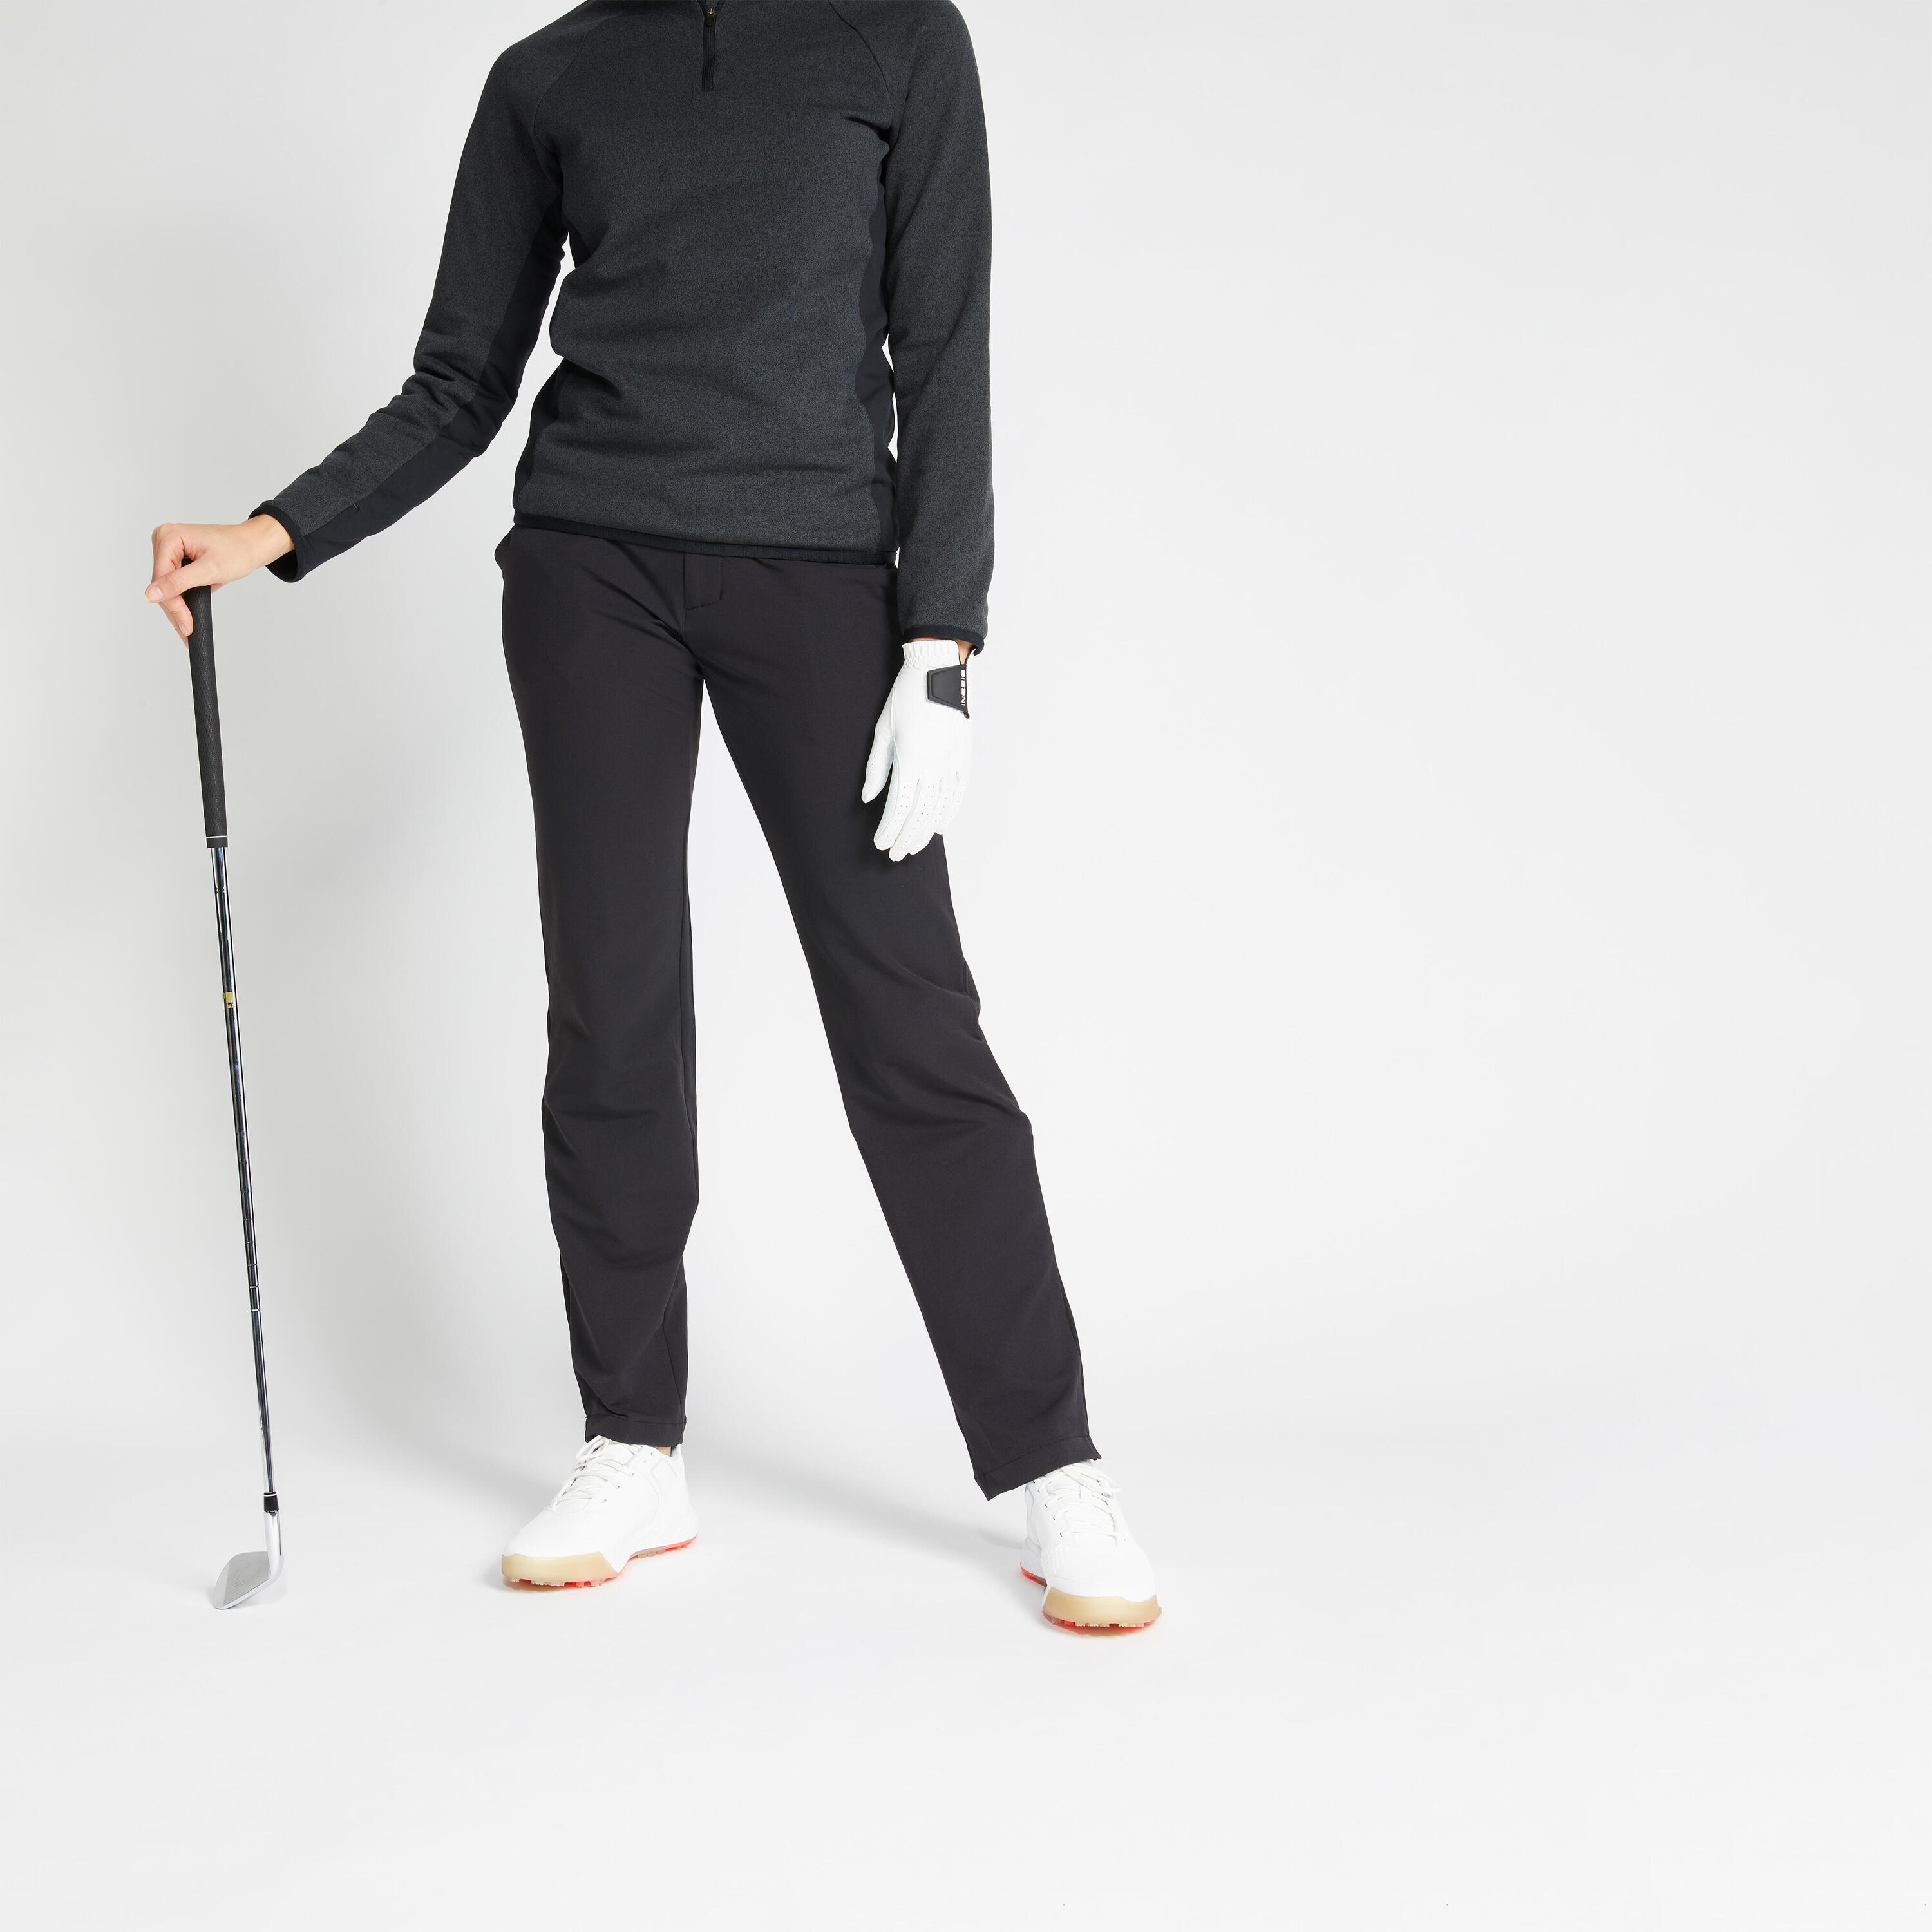 Women's golf winter trousers - CW500 black 1/6